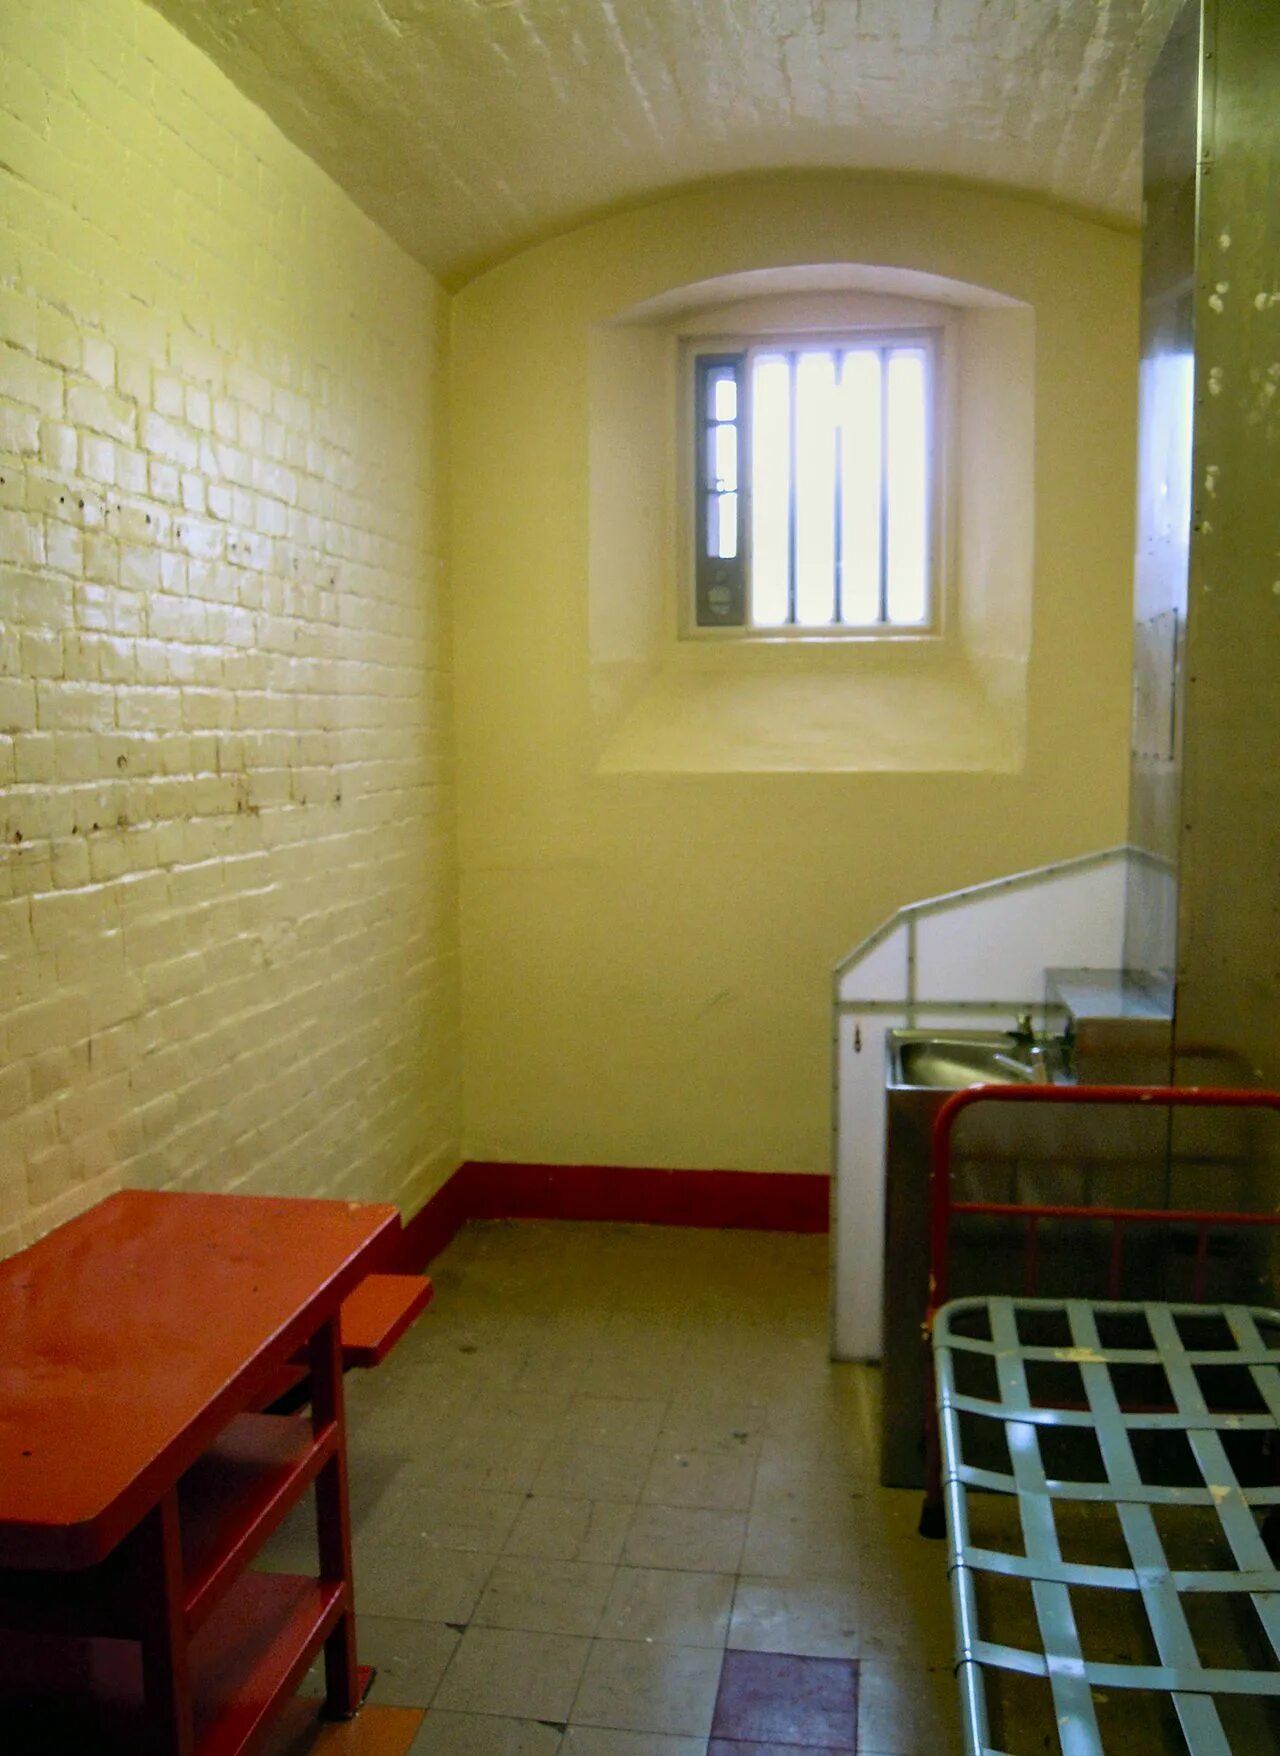 Оскар Уайльд в тюрьме. Редингская тюрьма. Тюрьма в которой сидел Оскар Уайльд. Рединг тюрьма.